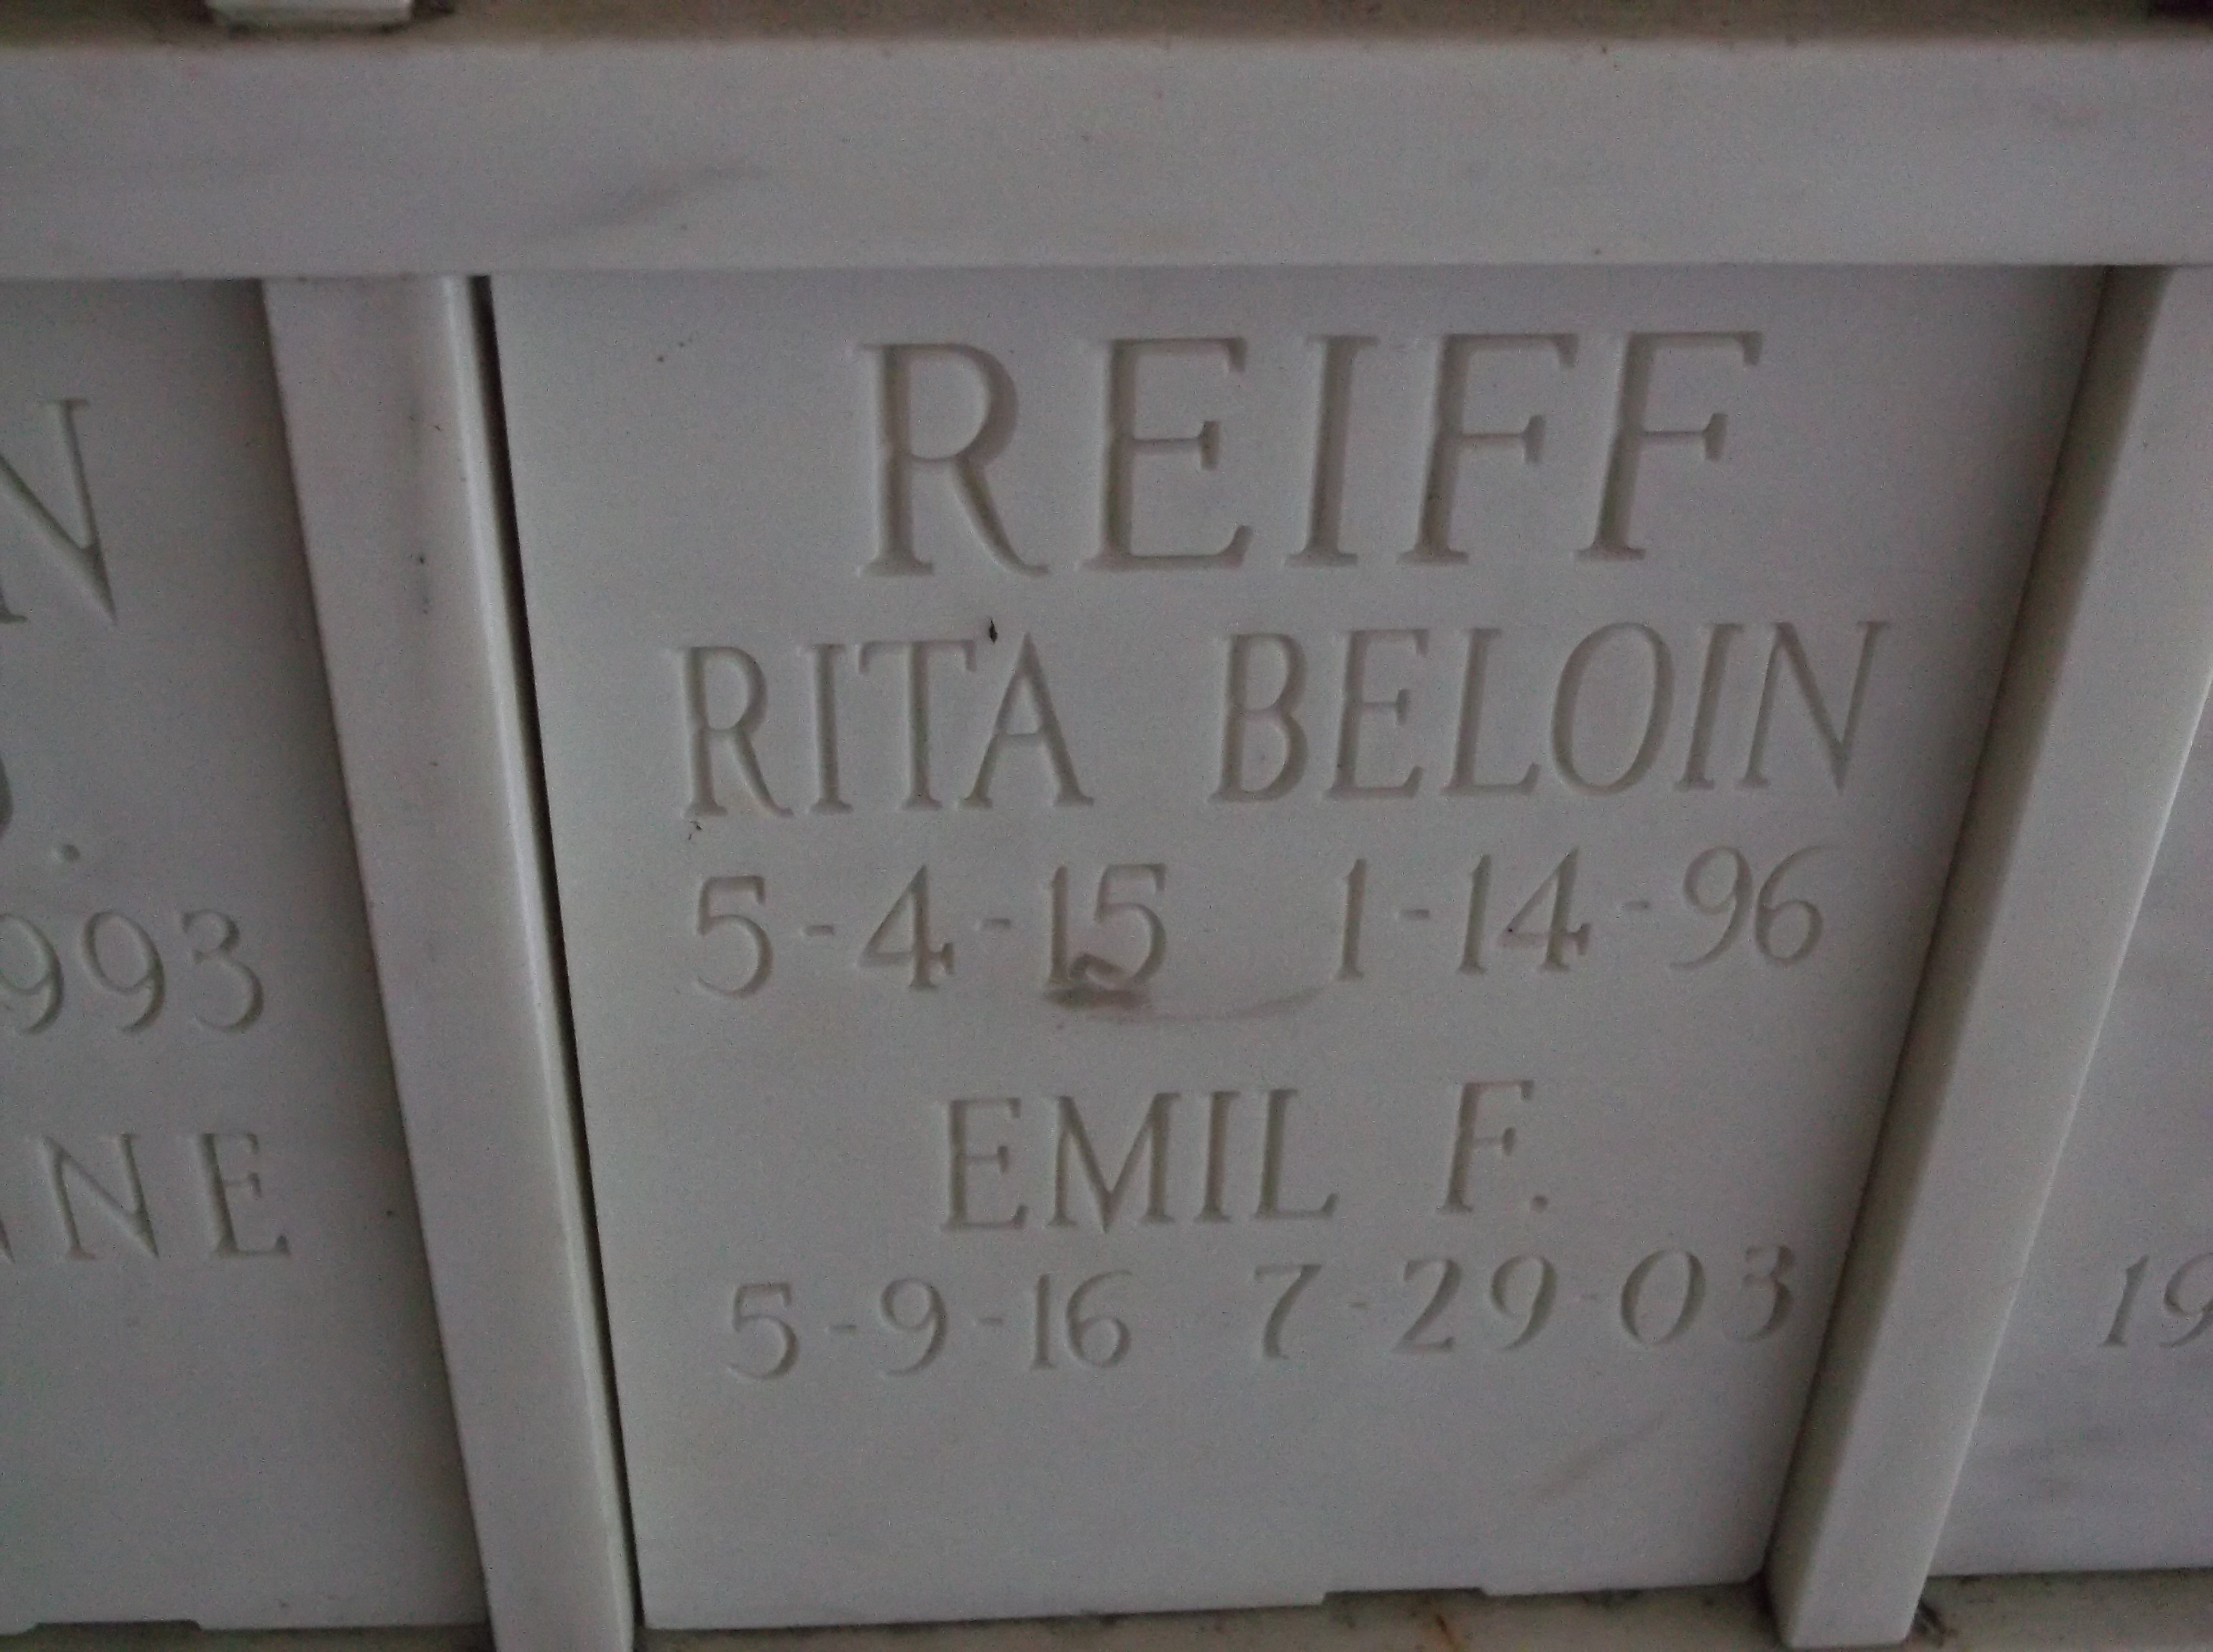 Rita Beloin Reiff